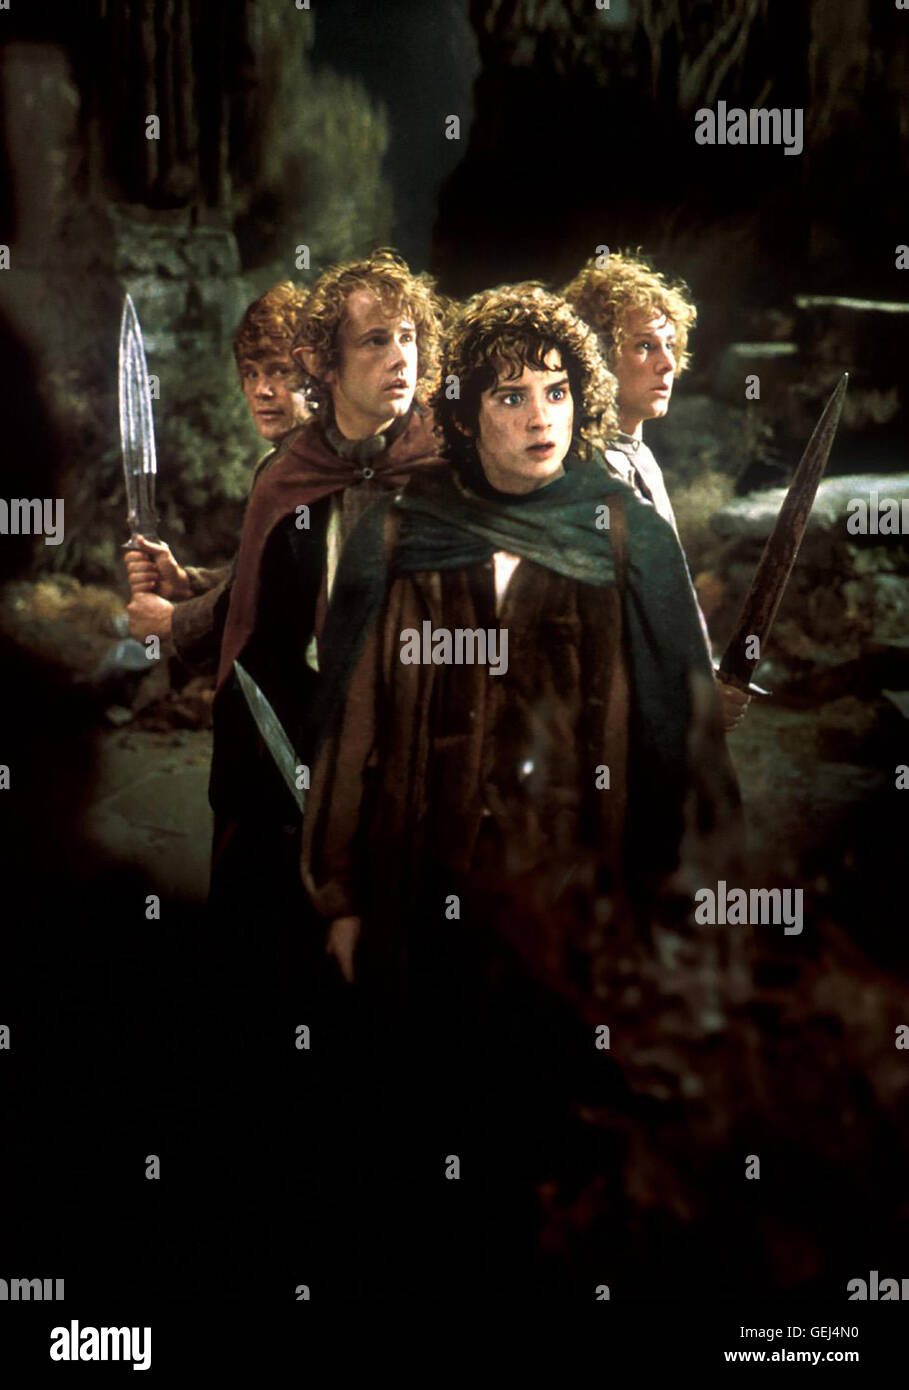 Elijah Wood Beutlin Frodo (Elijah Wood) *** Local Caption *** 2001, el señor de los Anillos: La Comunidad del Anillo, el Der Herr der Ringe - Die Gefaehrten Foto de stock